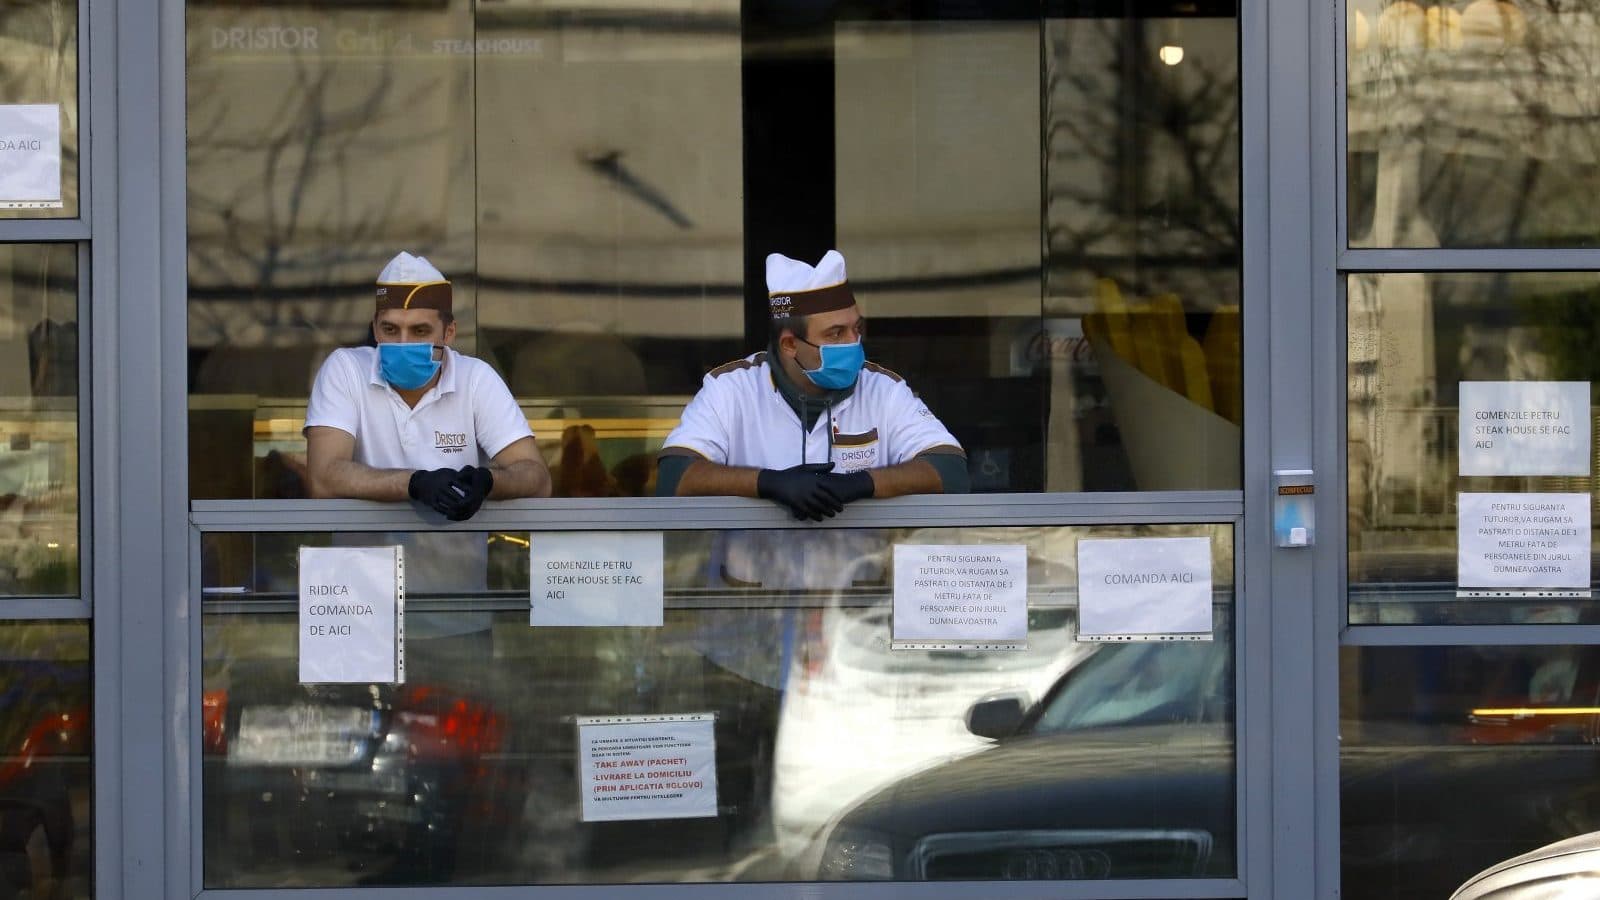 Romániában rosszabbodik a helyzet, nő a koronavírus-fertőzöttek száma és több a haláleset is